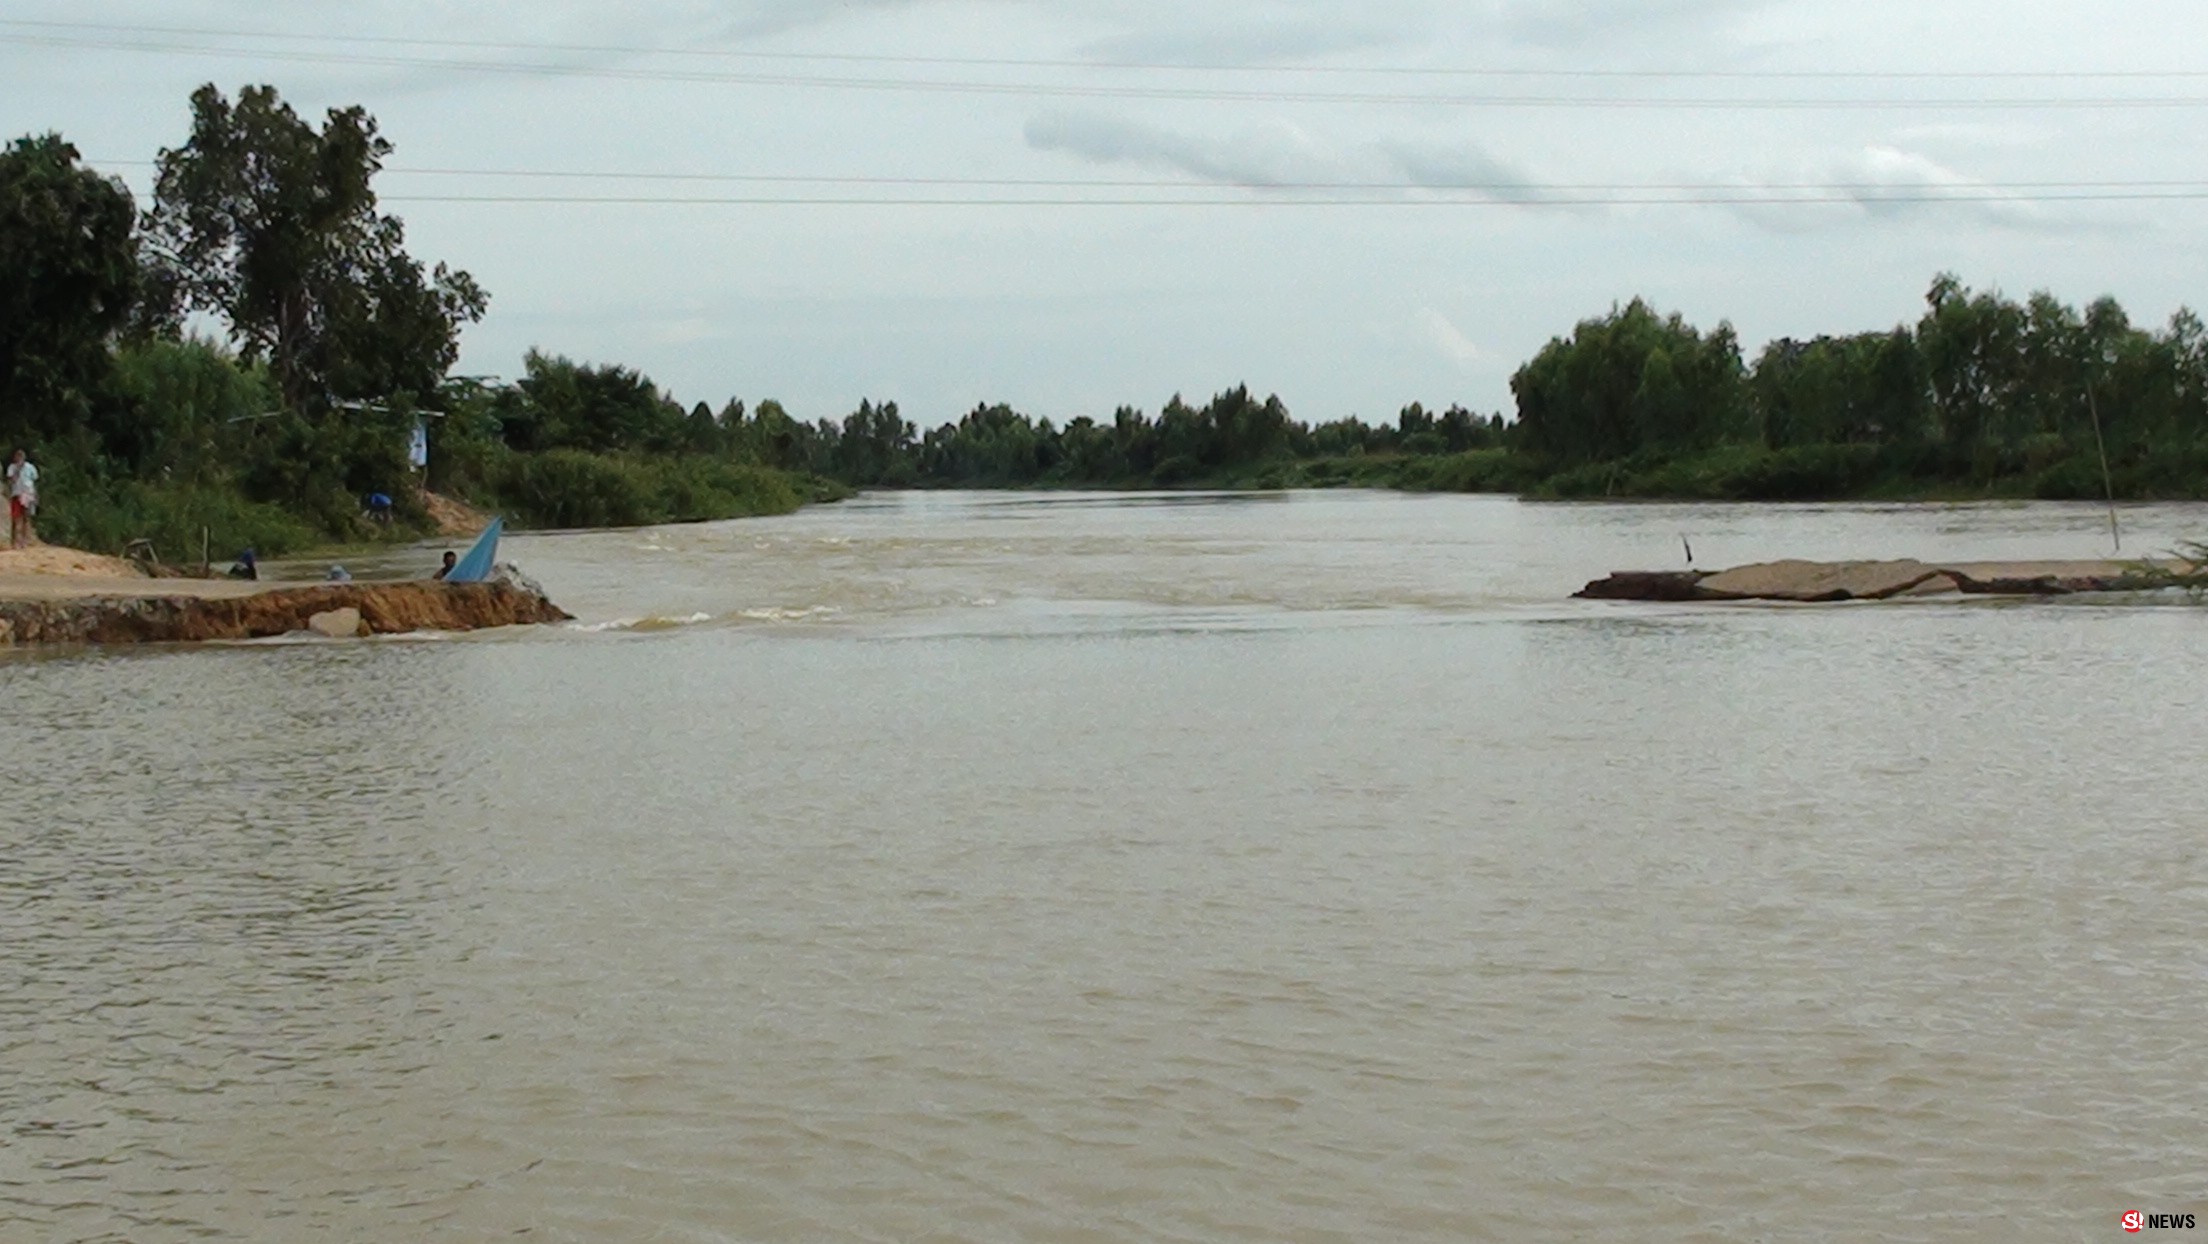 วิกฤต-แม่น้ำชีเพิ่มสูงกัดเซาะทุกเส้นทางทำถนนขาด ชาวบ้านพึ่งเรือเท่านั้น 